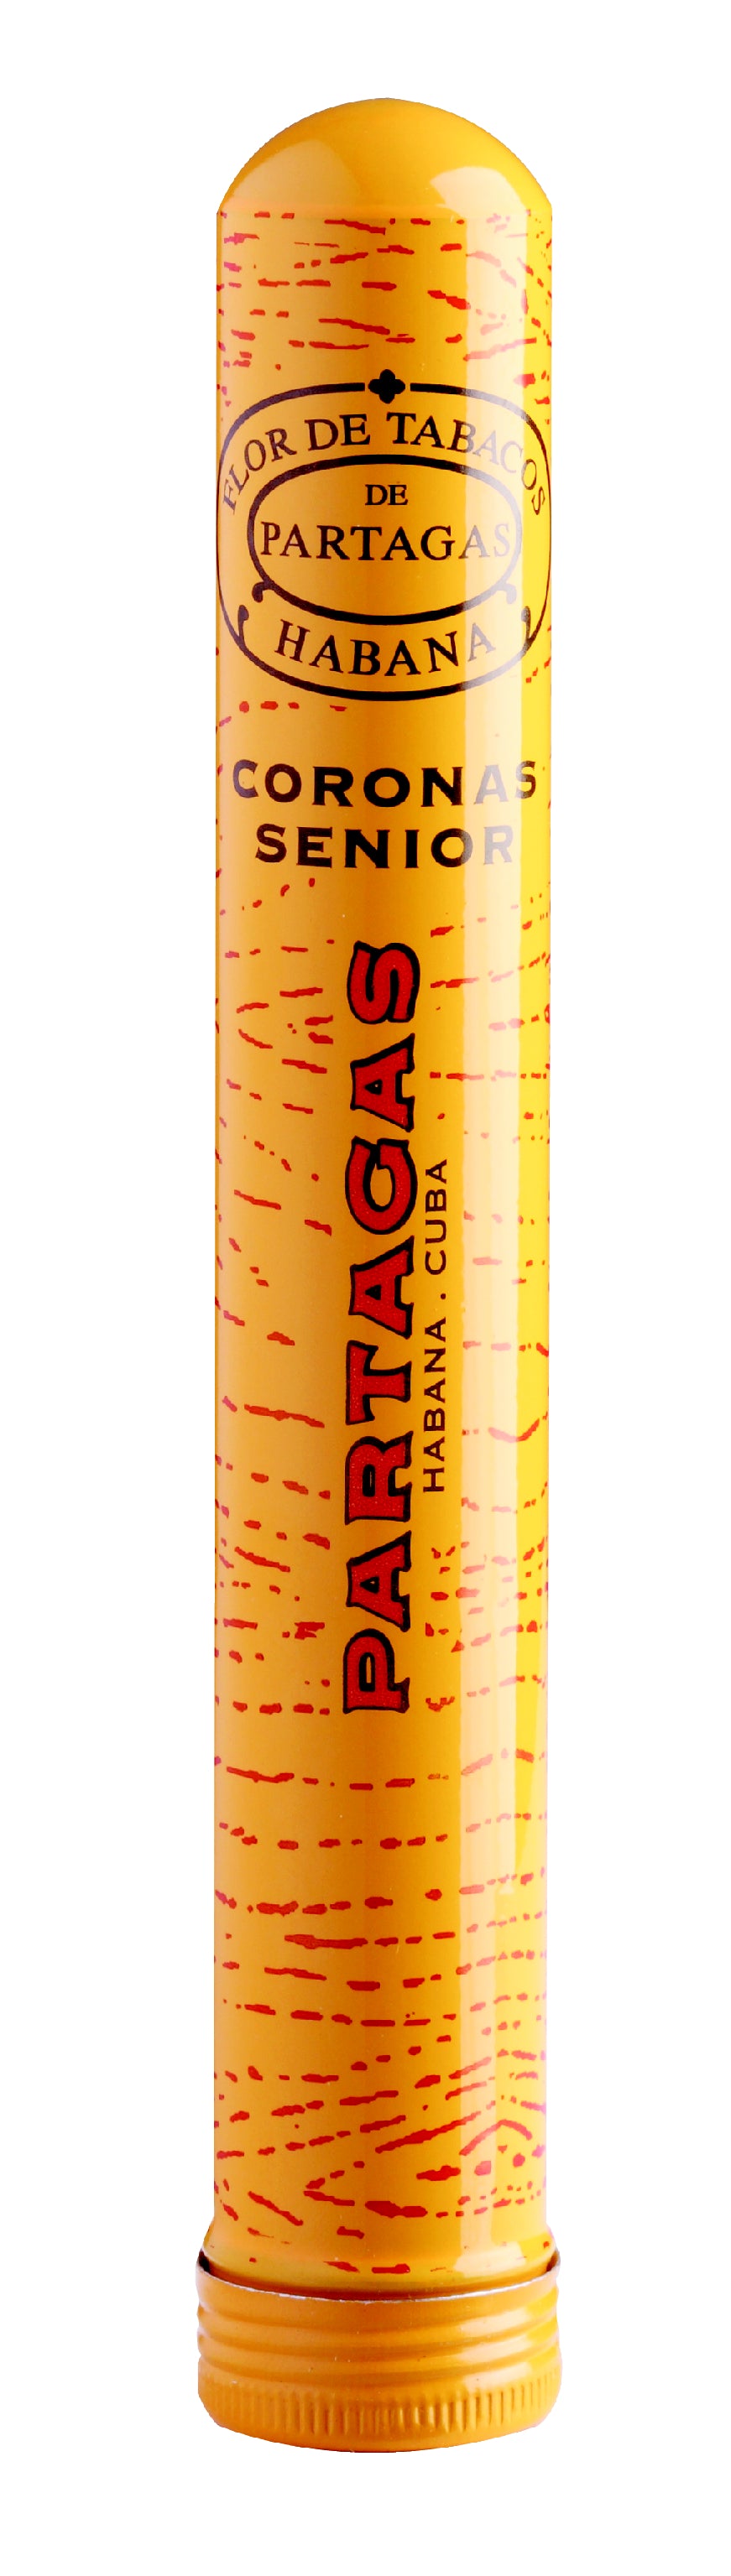 Partagas - Coronas Senior A/T